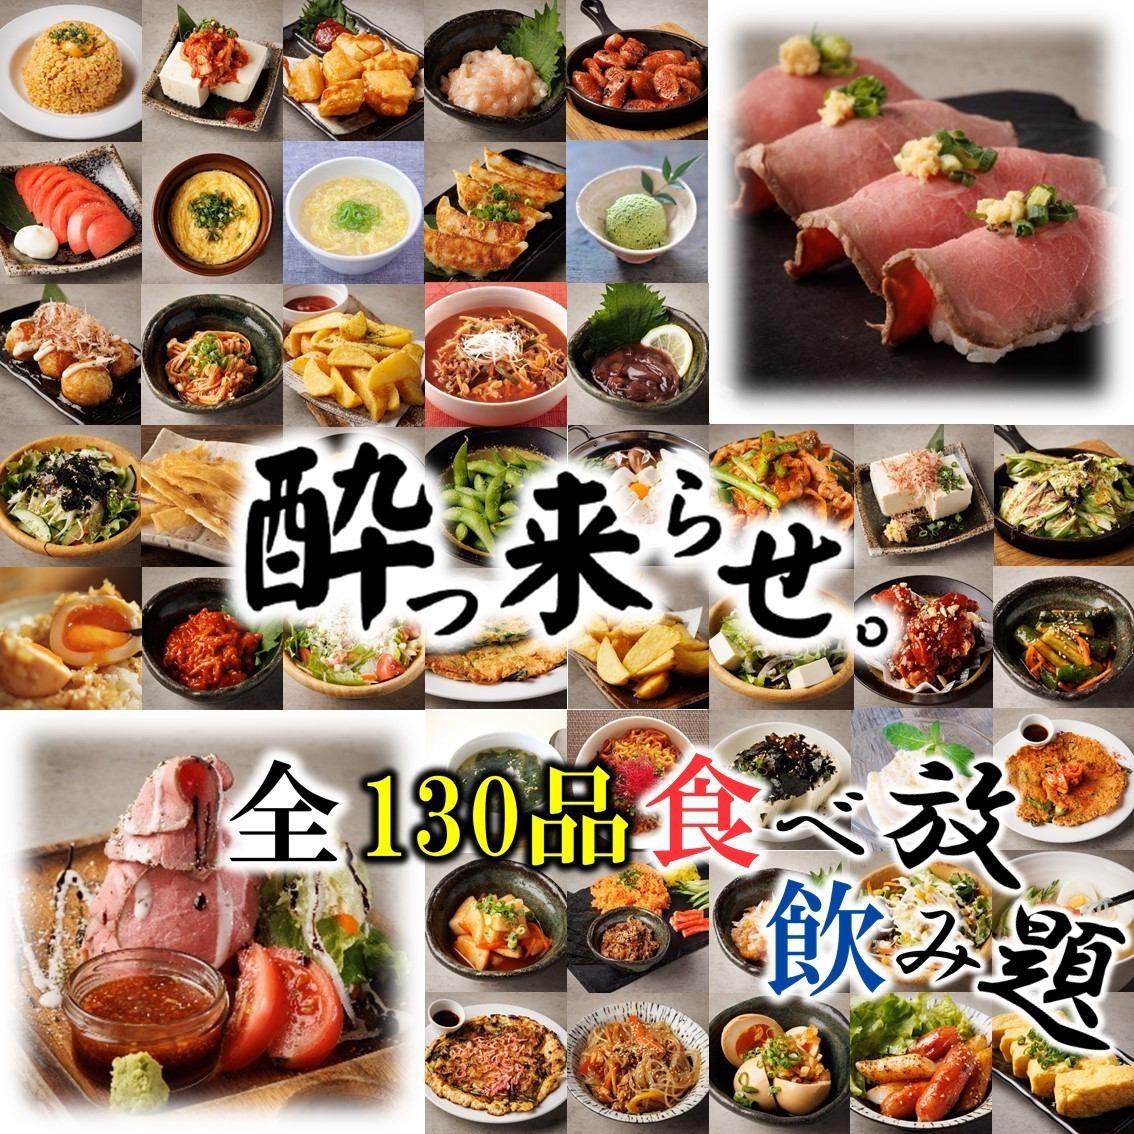 가와고에에서 고기 스시나 로스트 비프의 음료 무제한을 즐길 수 있는 코스파 최강 이자카야가 open☆